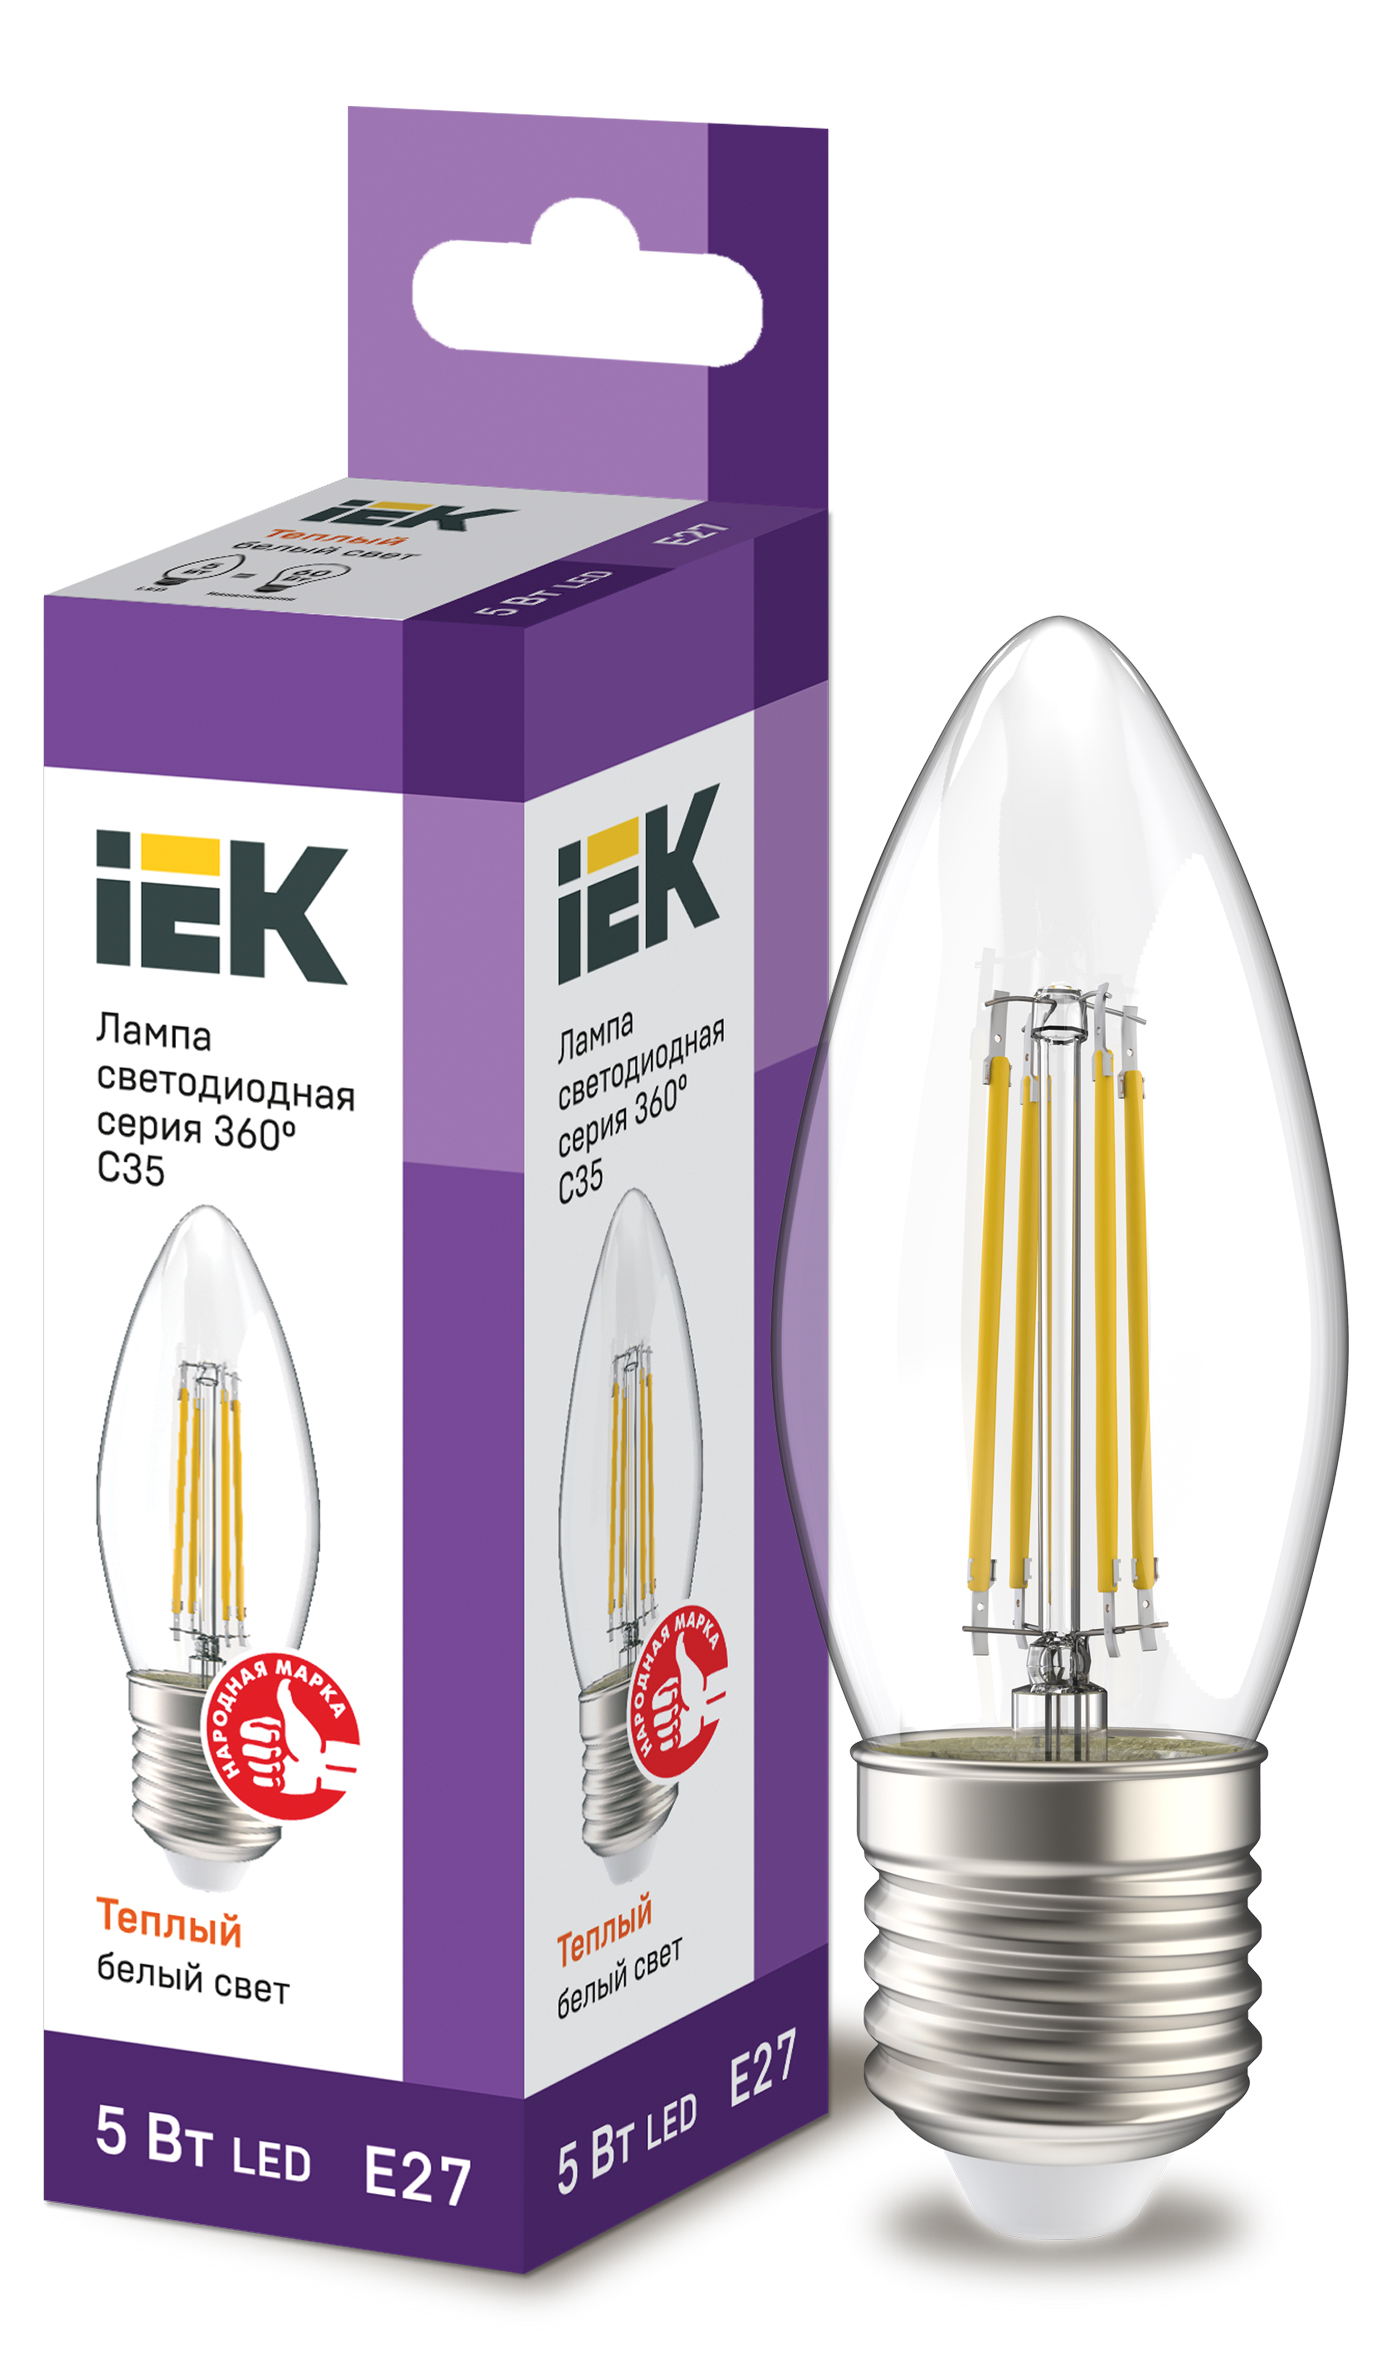 IEK Лампа LED C35 свеча прозрачный 5Вт 230В 3000К E27 серия 360°